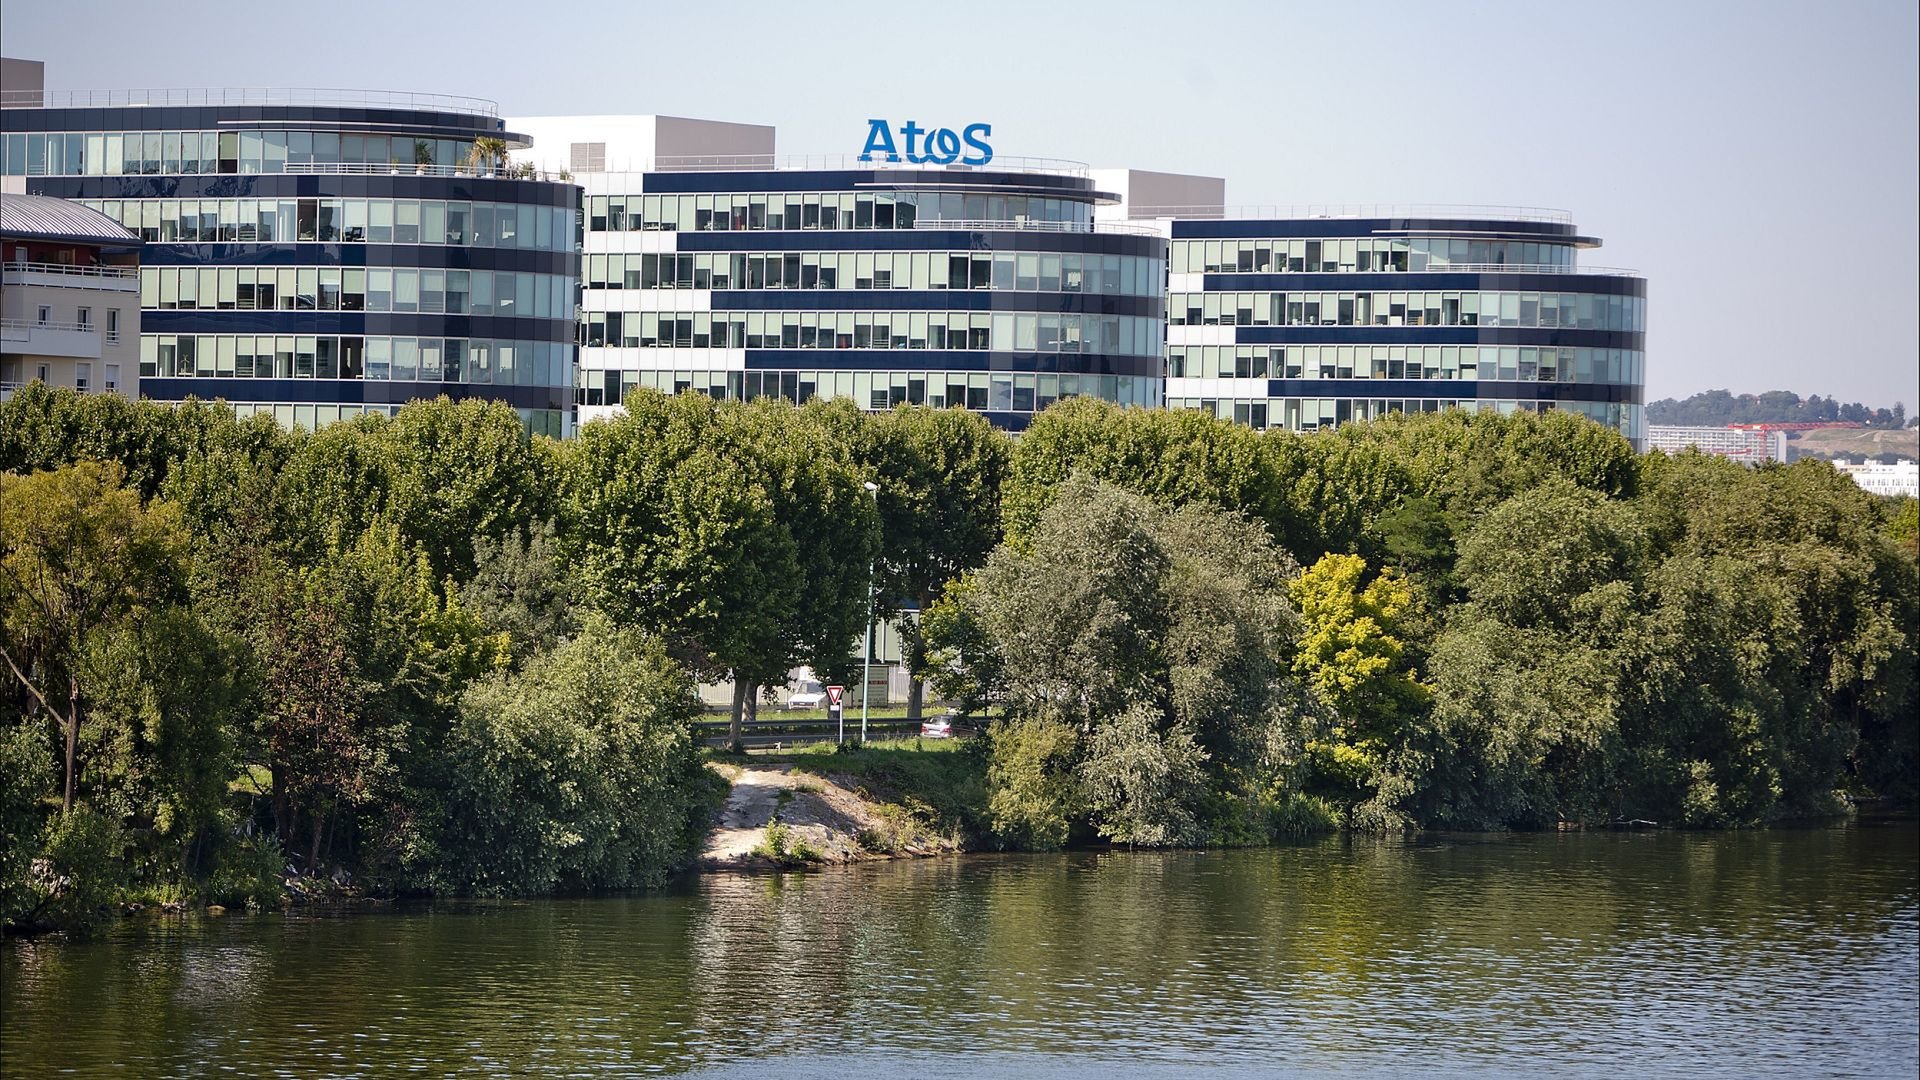 الحكومة الفرنسية تتطلع إلى الحصول على أصول استراتيجية من Atos بقيمة مليار يورو: الحوسبة المتقدمة والأنظمة الحرجة المهمة والمنتجات السيبرانية